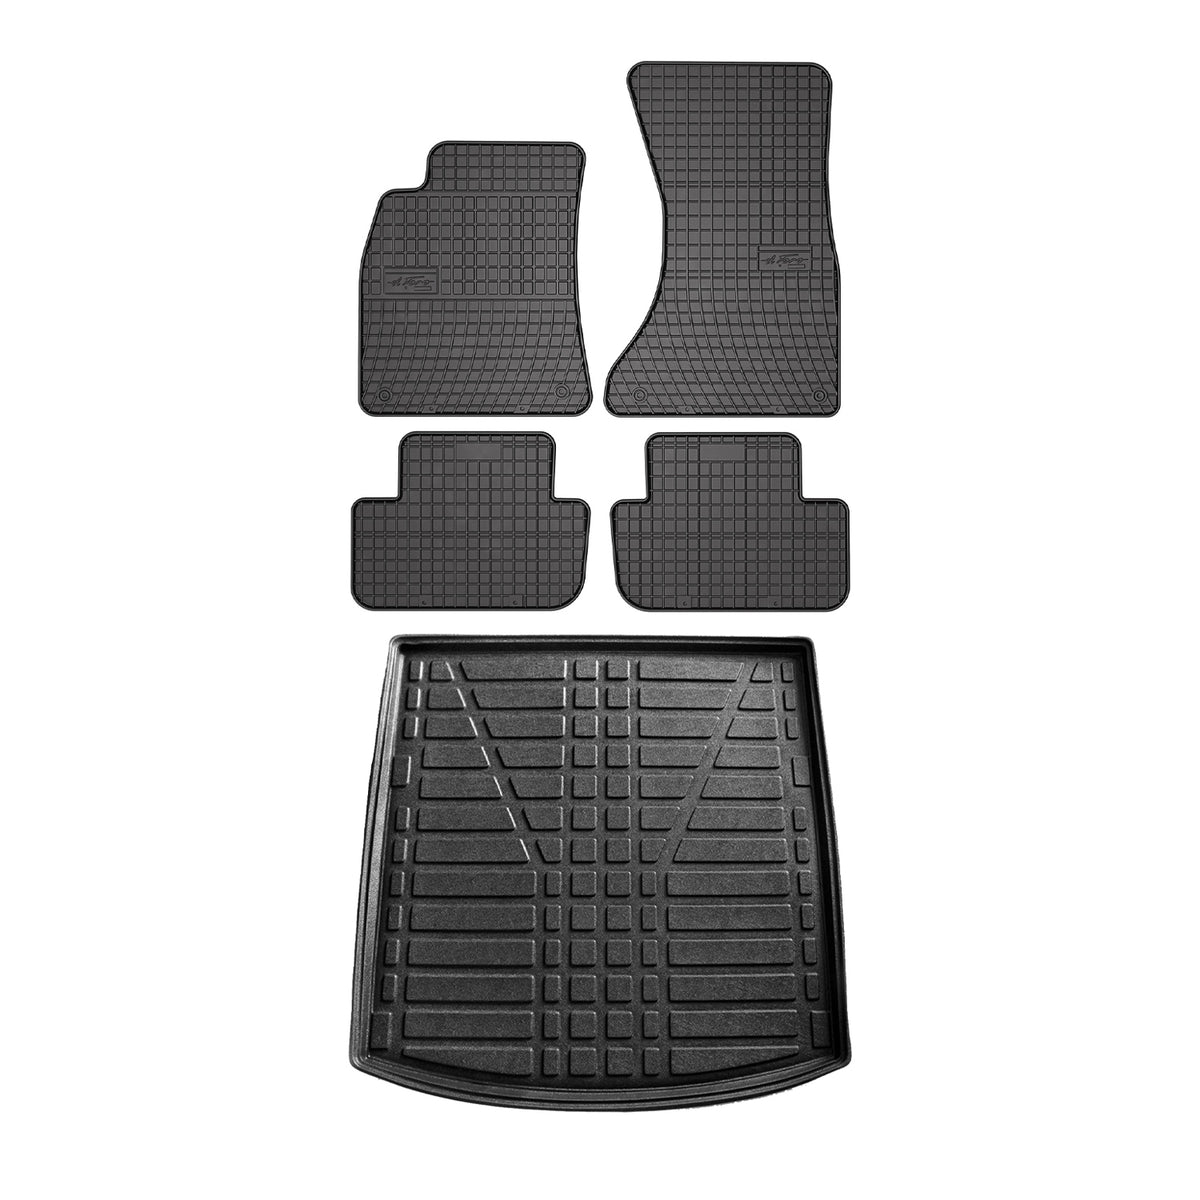 Fußmatten & Kofferraumwanne Set für Audi A6 C7 Limo 2011-2018 Gummi Schwarz 5x